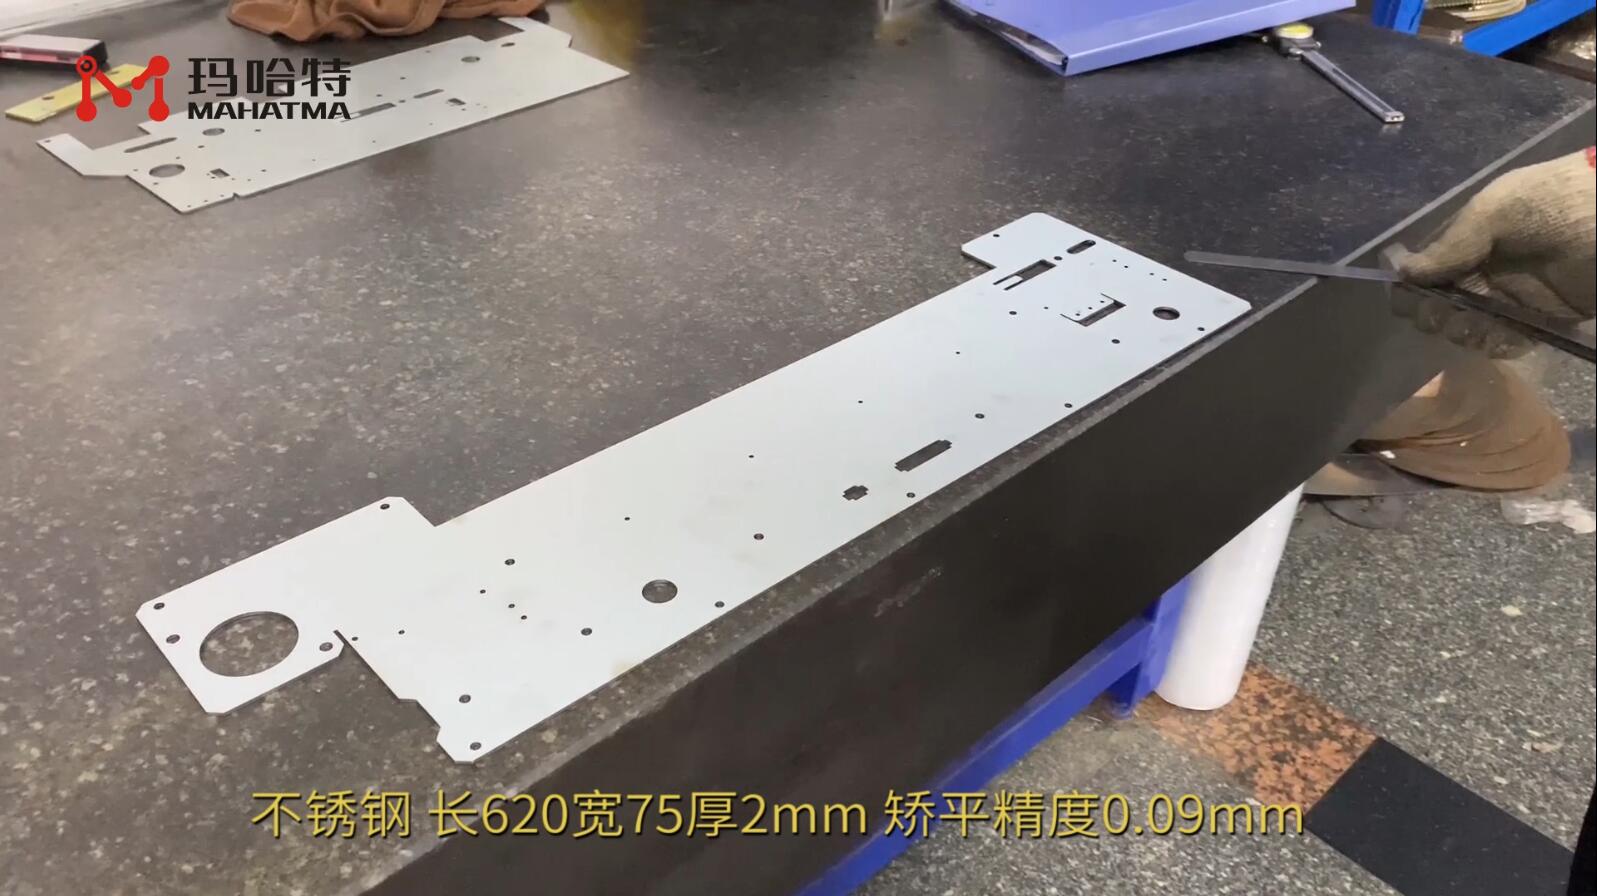 不锈钢 MHT50-1300 长方形 长620宽75厚2mm